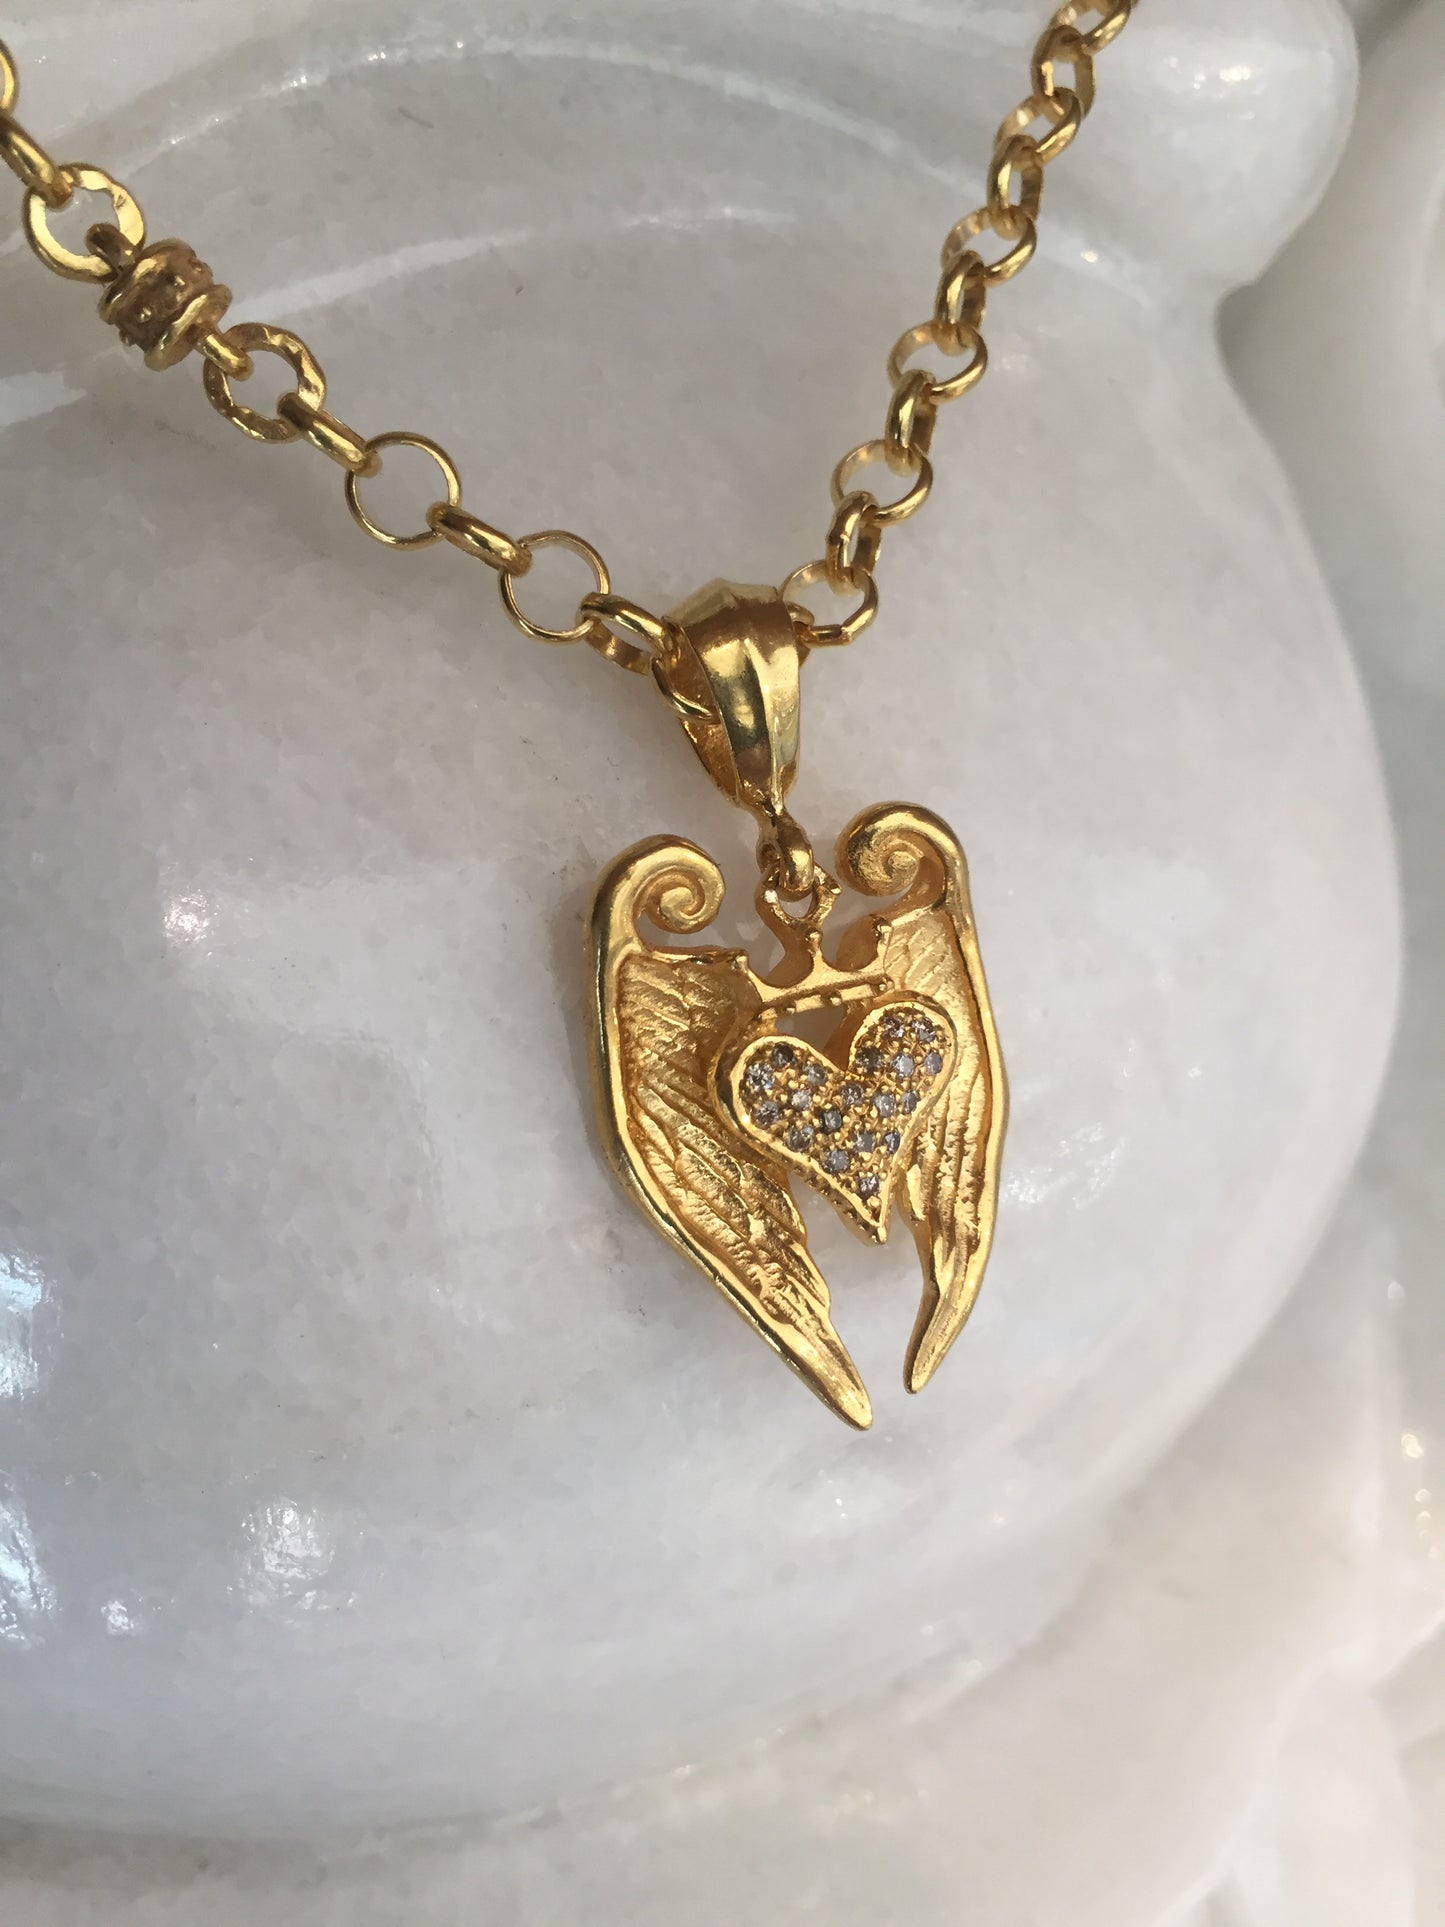 Necklace - Angel Golden Heart & Diamonds in sterling silver 18k finish by Roman Paul